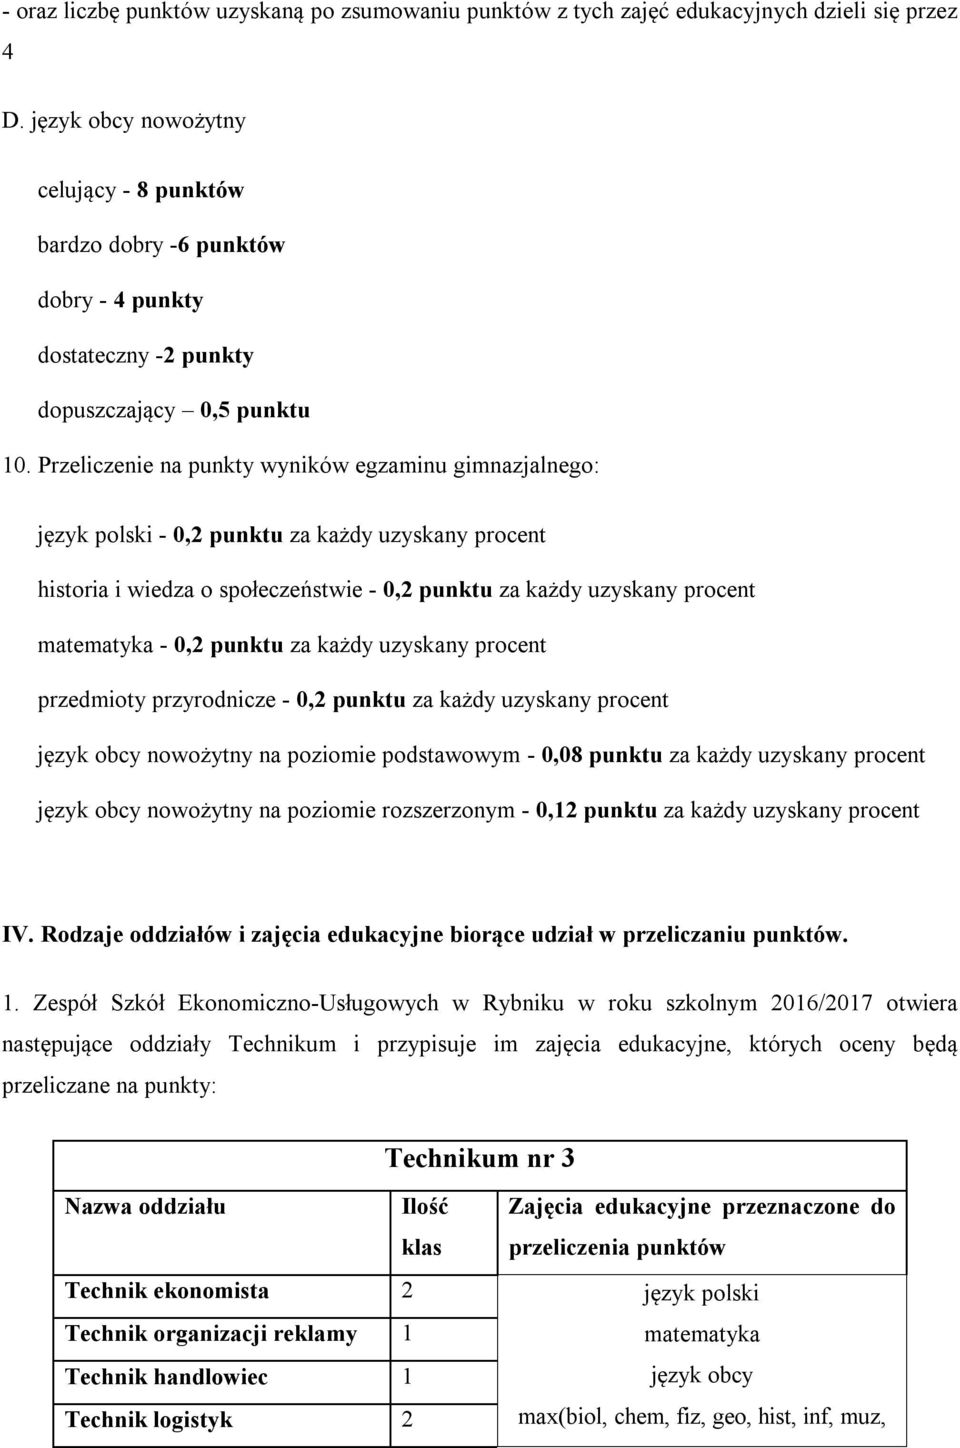 Przeliczenie na punkty wyników egzaminu gimnazjalnego: język polski - 0,2 punktu za każdy uzyskany procent historia i wiedza o społeczeństwie - 0,2 punktu za każdy uzyskany procent matematyka - 0,2